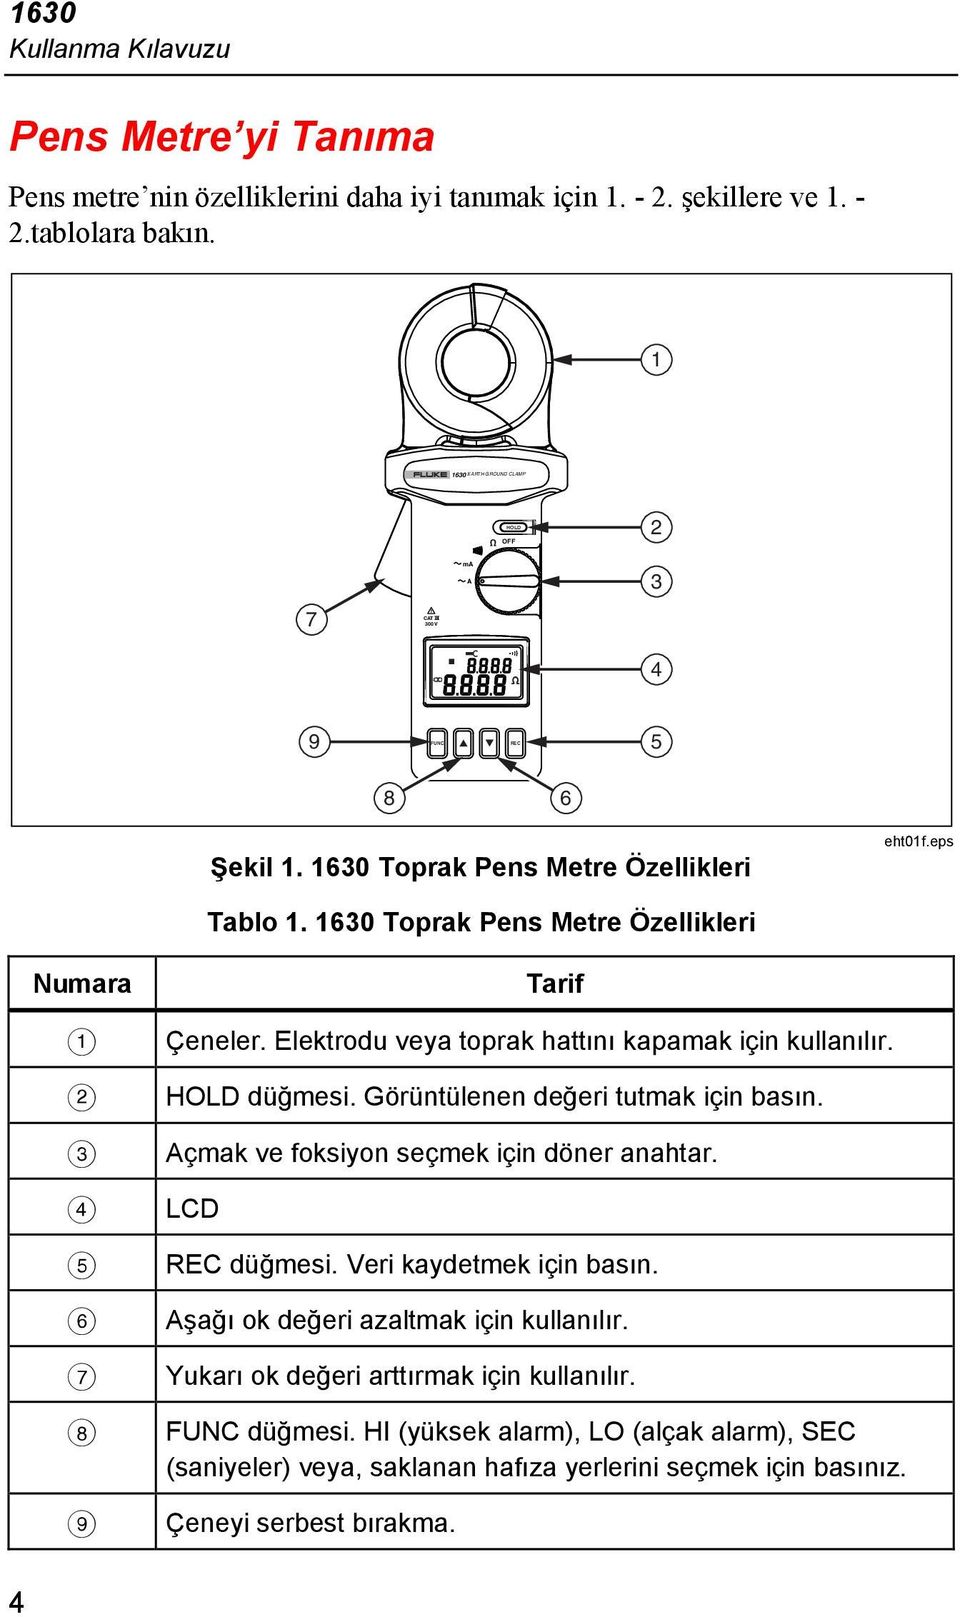 1630 Toprak Pens Metre Özellikleri Numara A B C D E F G H I Tarif Çeneler. Elektrodu veya toprak hattını kapamak için kullanılır. HOLD düğmesi. Görüntülenen değeri tutmak için basın.